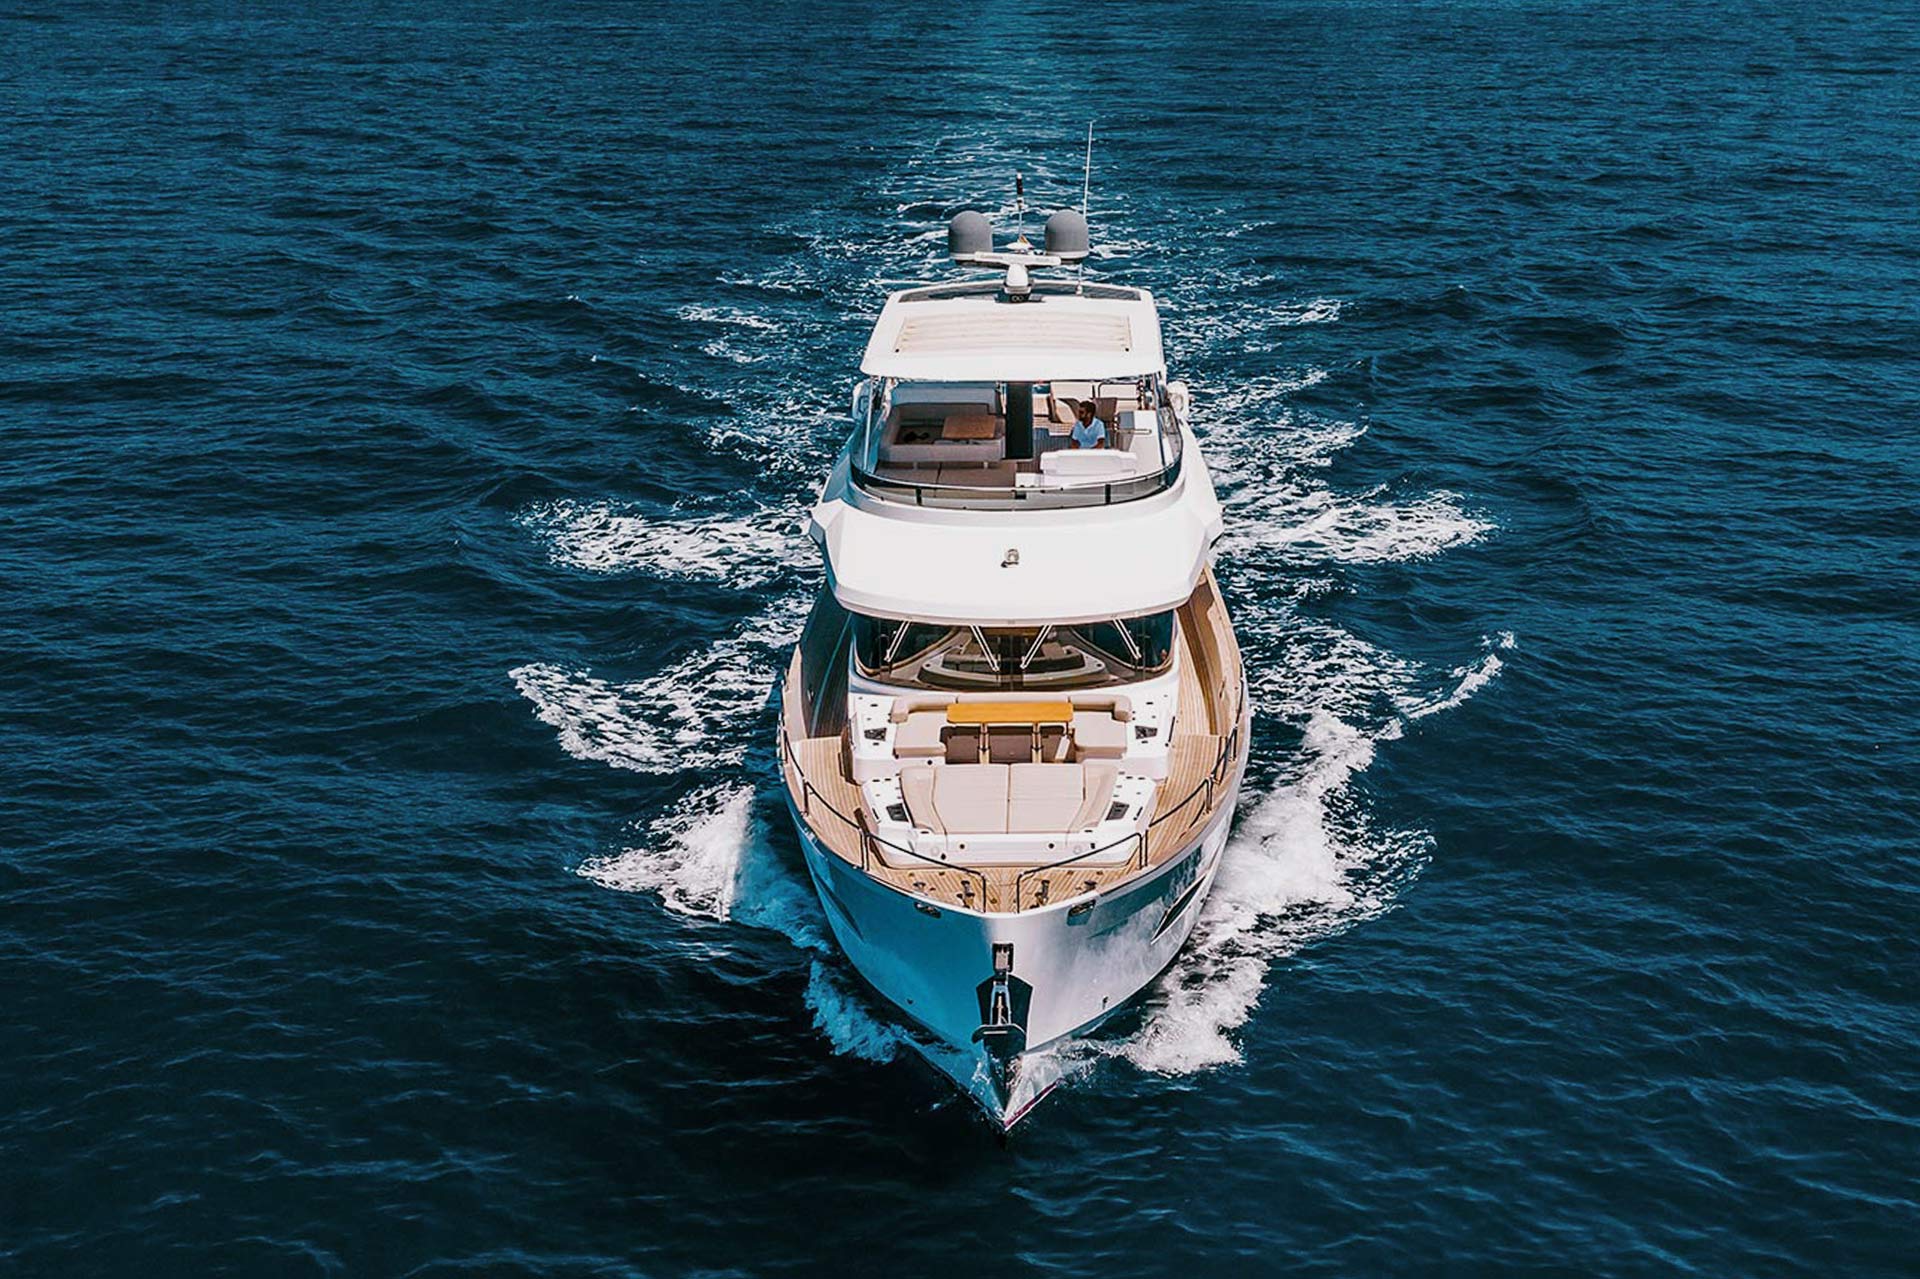 background-yacht-salacia-charter-alexferrerfotografo